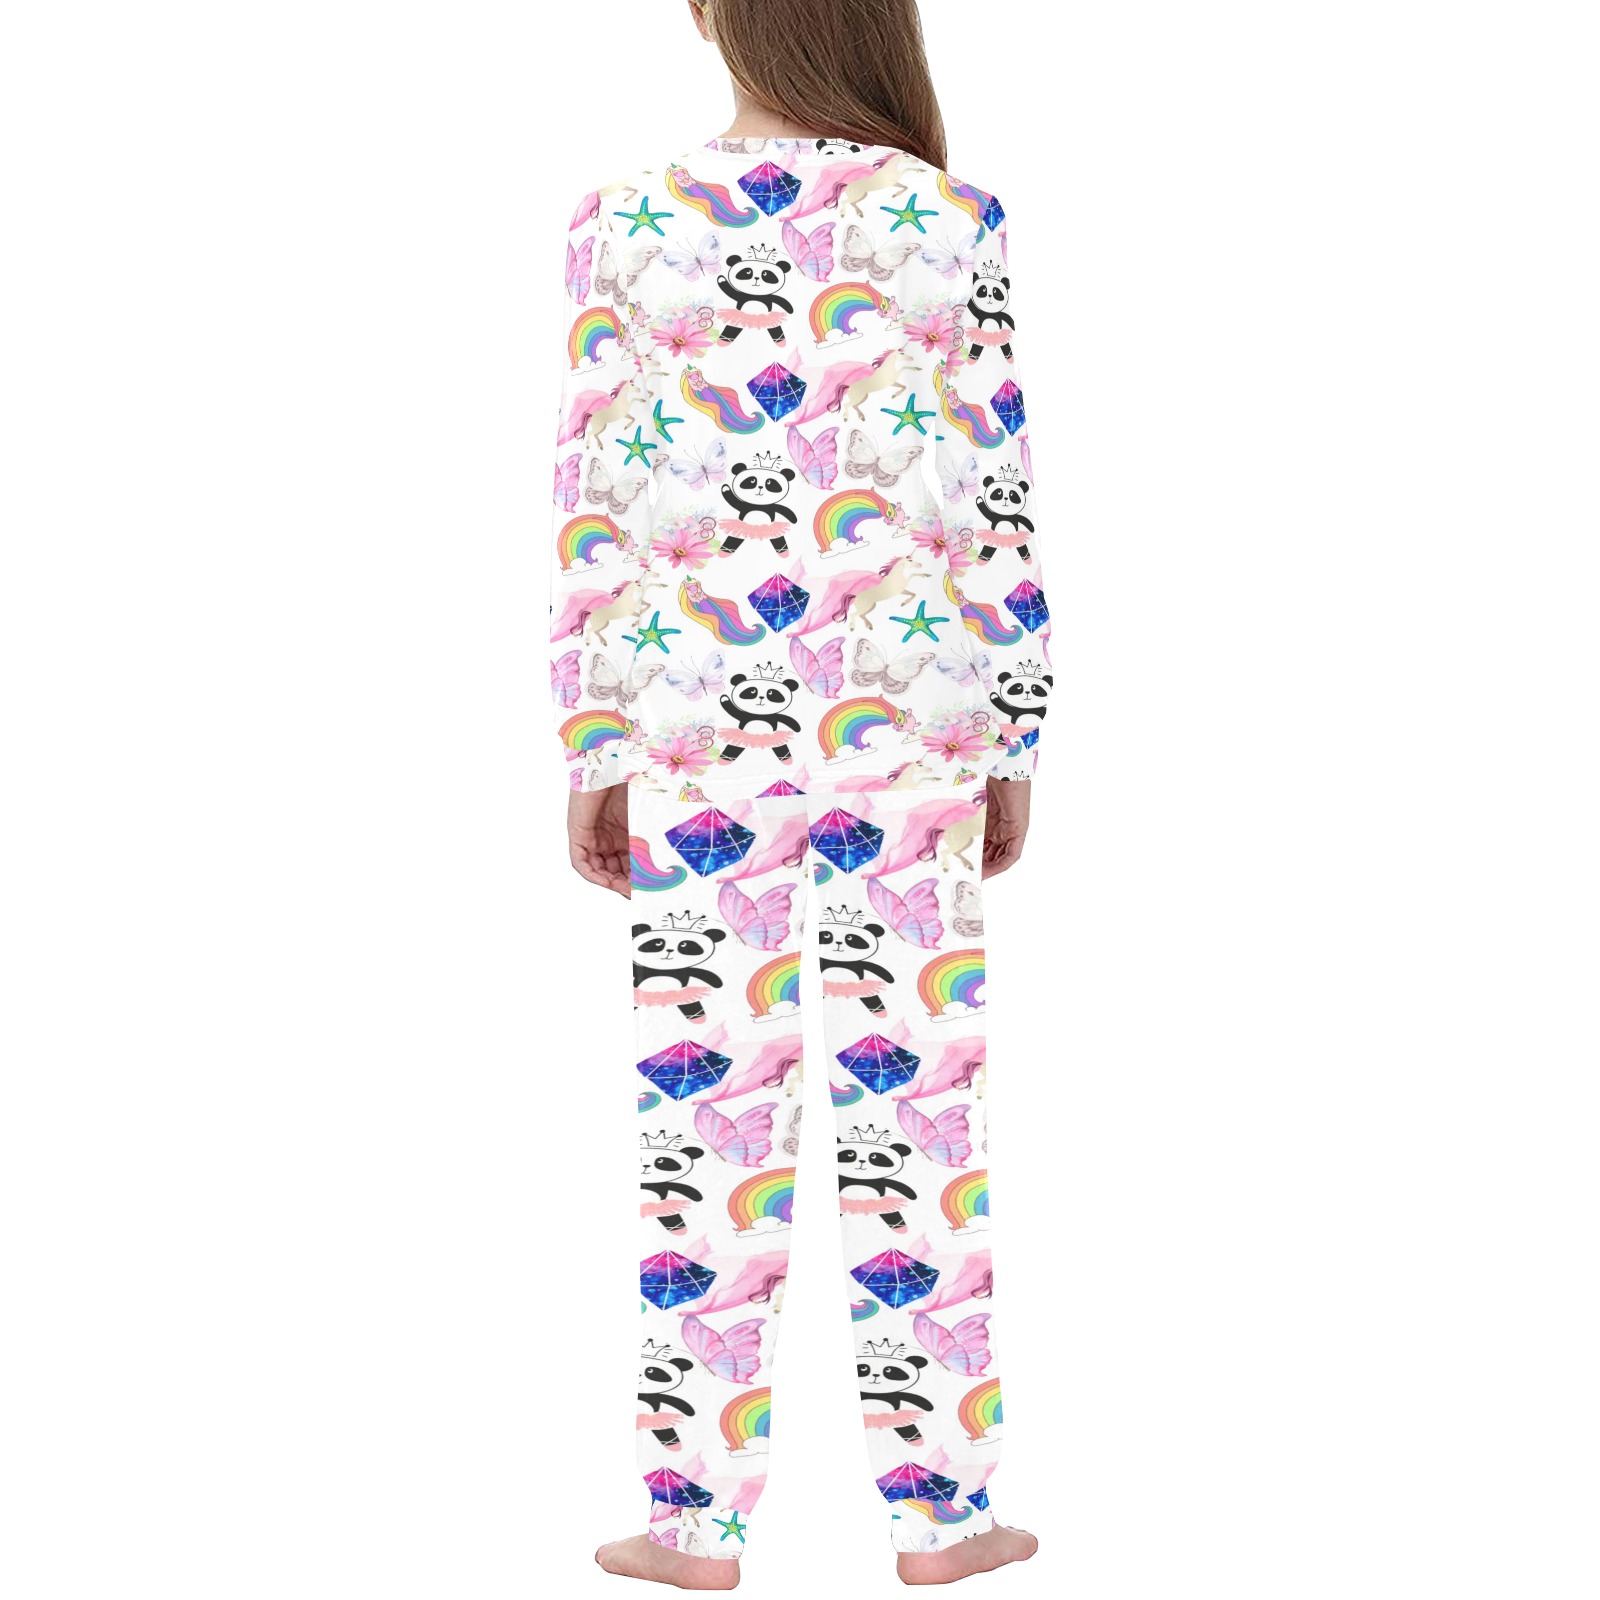 Holiday Kids' All Over Print Pajama Set